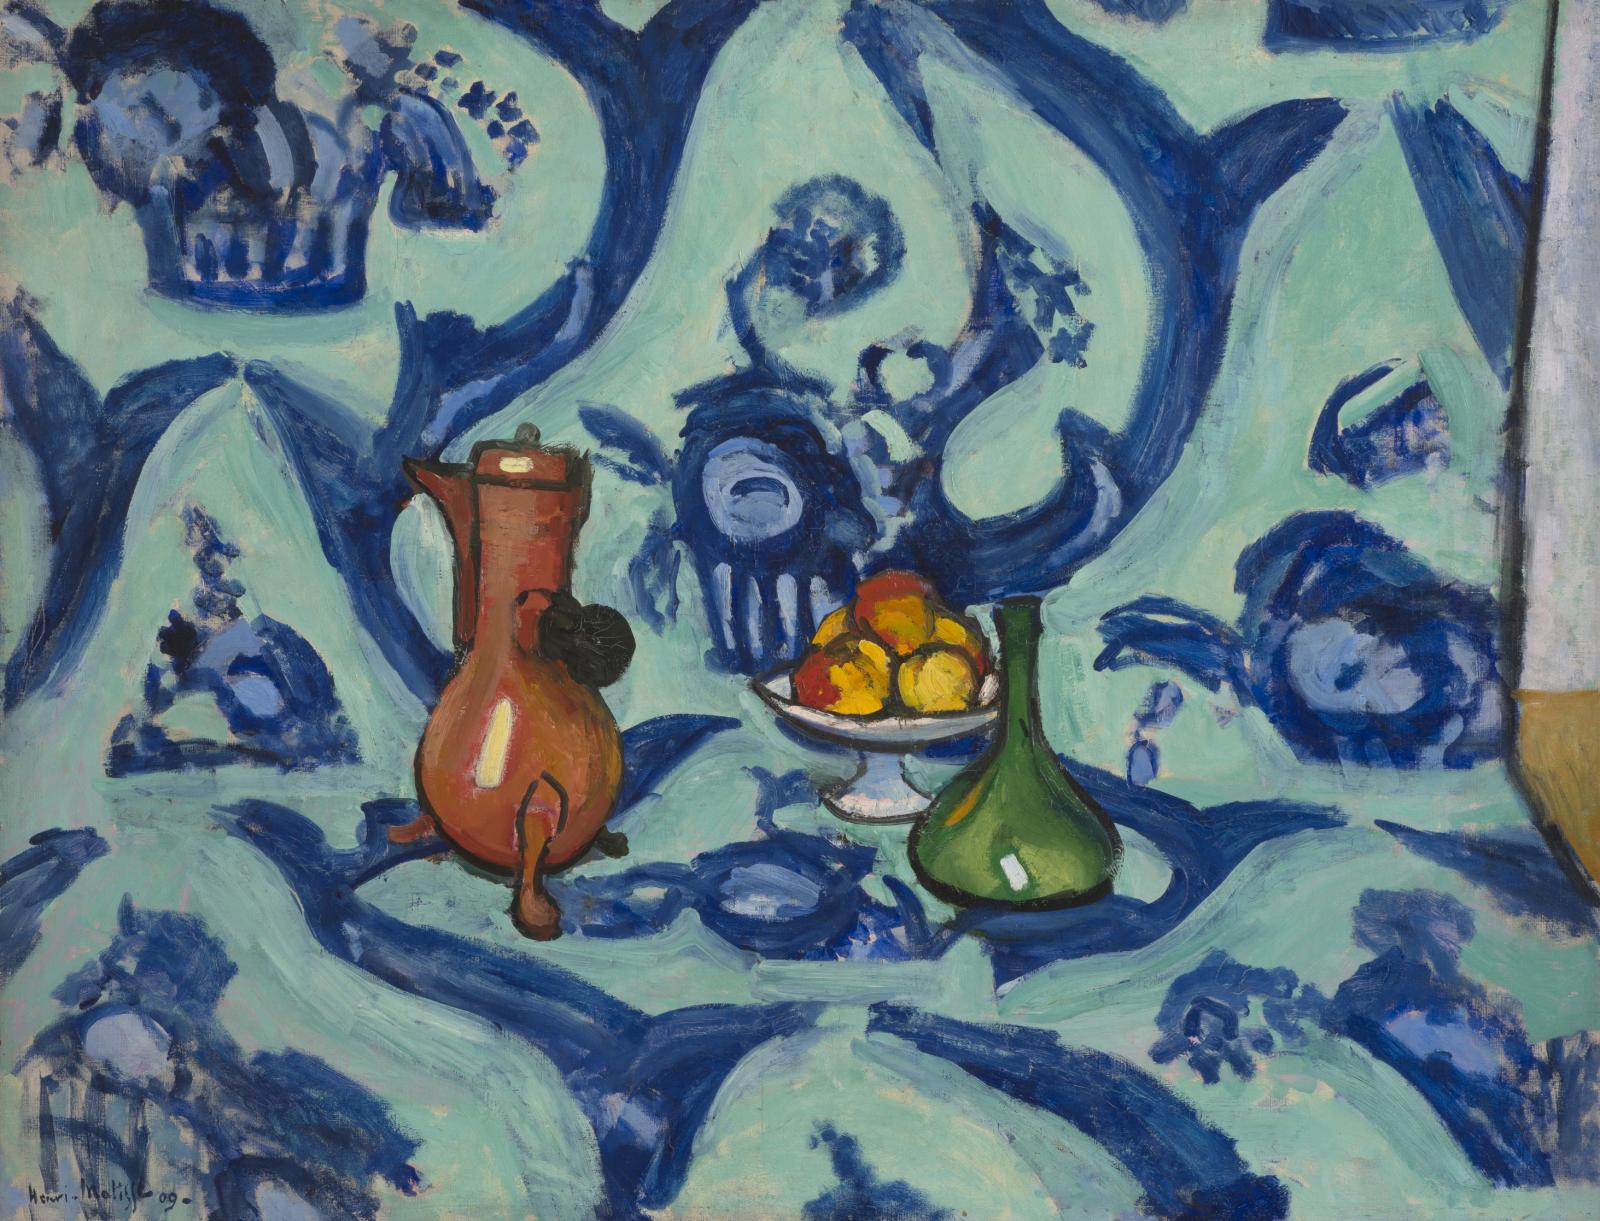 Henri Matisse (1869-1954), Nature morte camaïeu bleu, 1908-1909, huile sur toile, 88,5 x 116 cm, musée d’État de l’Ermitage, Saint-Pétersb